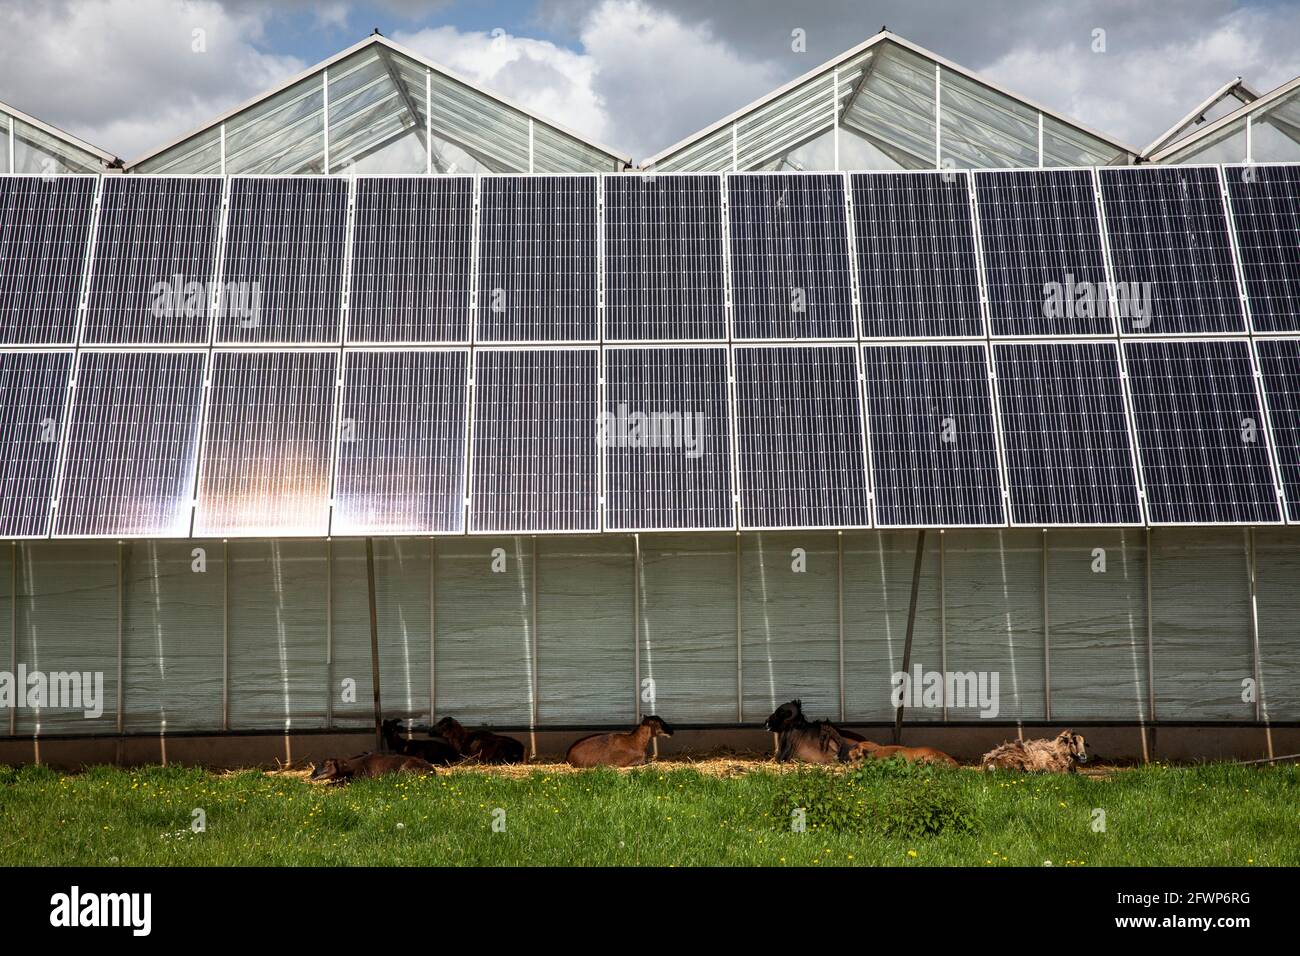 Modules photovoltaïques, panneaux solaires sur les serres d'un jardin d'enfants à Pulheim-Sinnersdorf, les chèvres se trouvent à l'ombre, Rhénanie-du-Nord-Westphalie, Allemagne. Banque D'Images